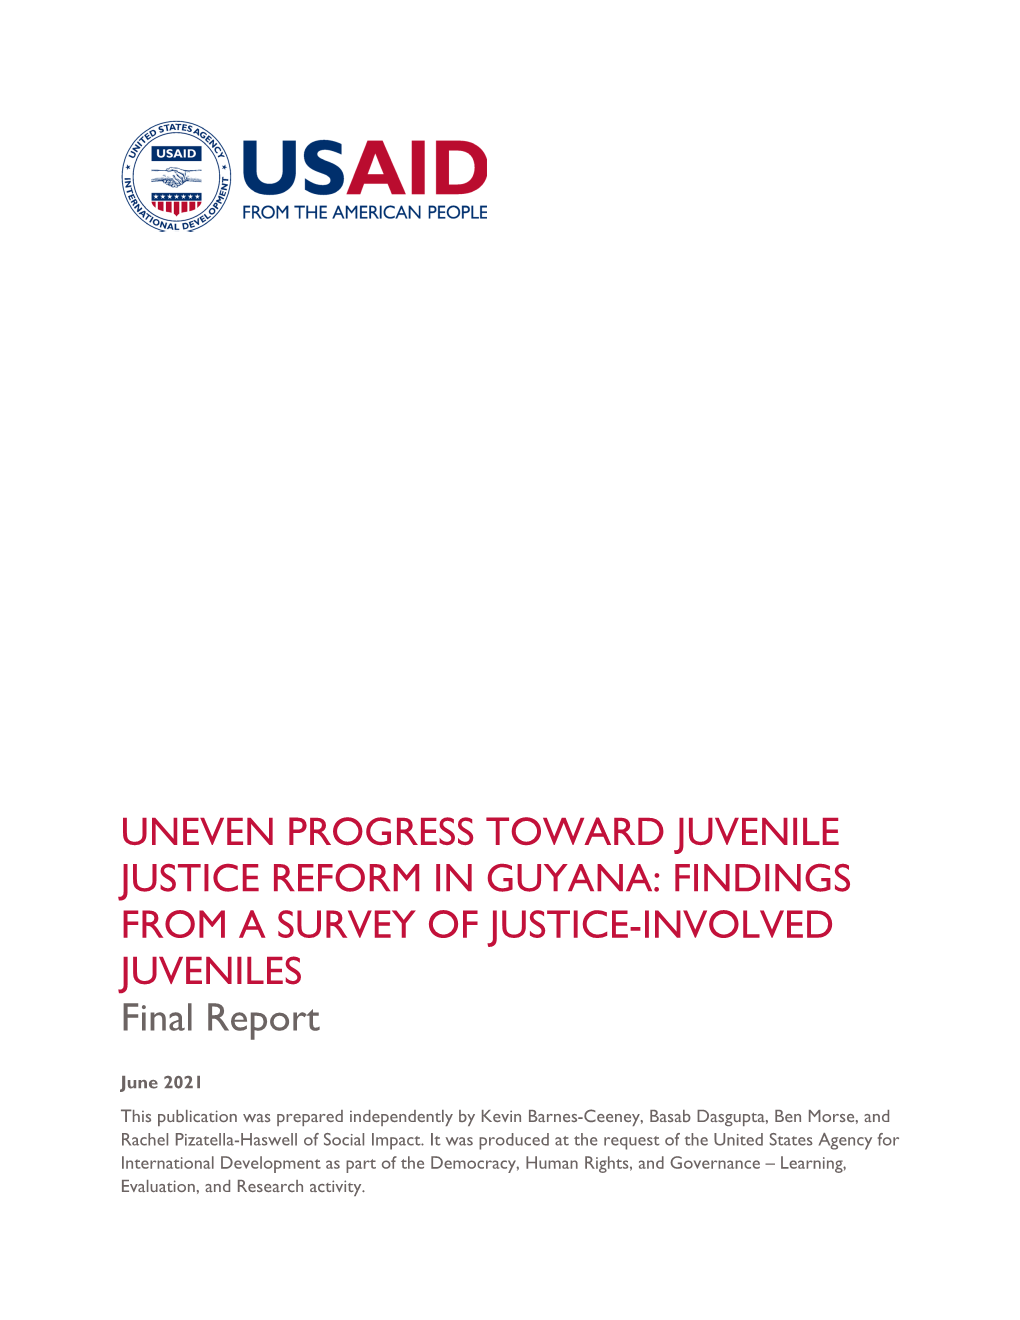 Guyana Juvenile Justice Report